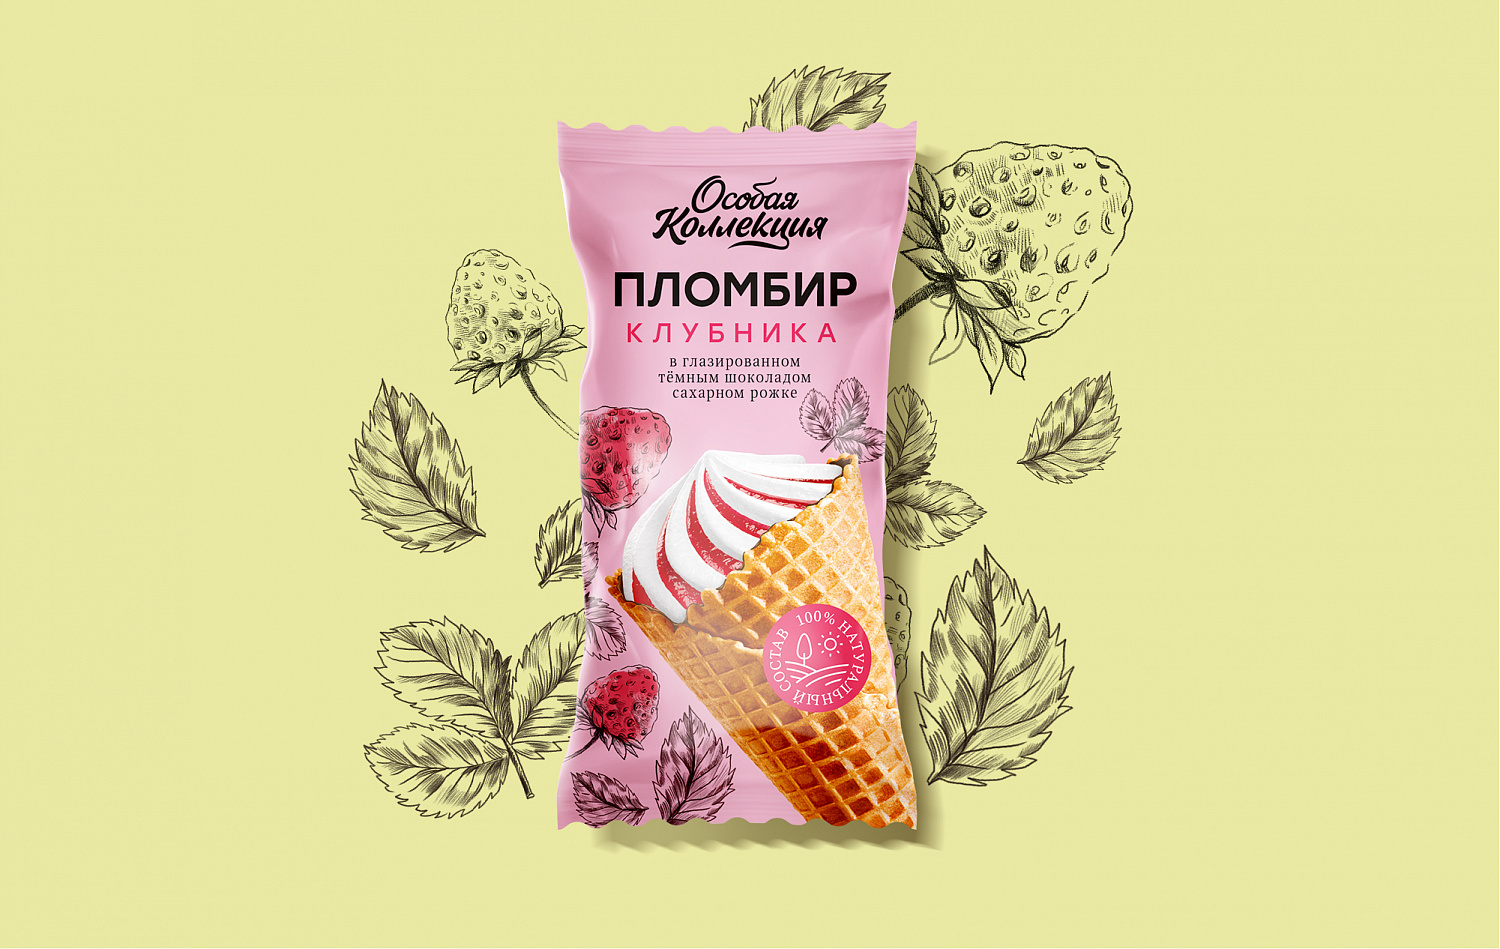 SPAR Мороженое: Дизайн упаковки СТМ - Портфолио Depot